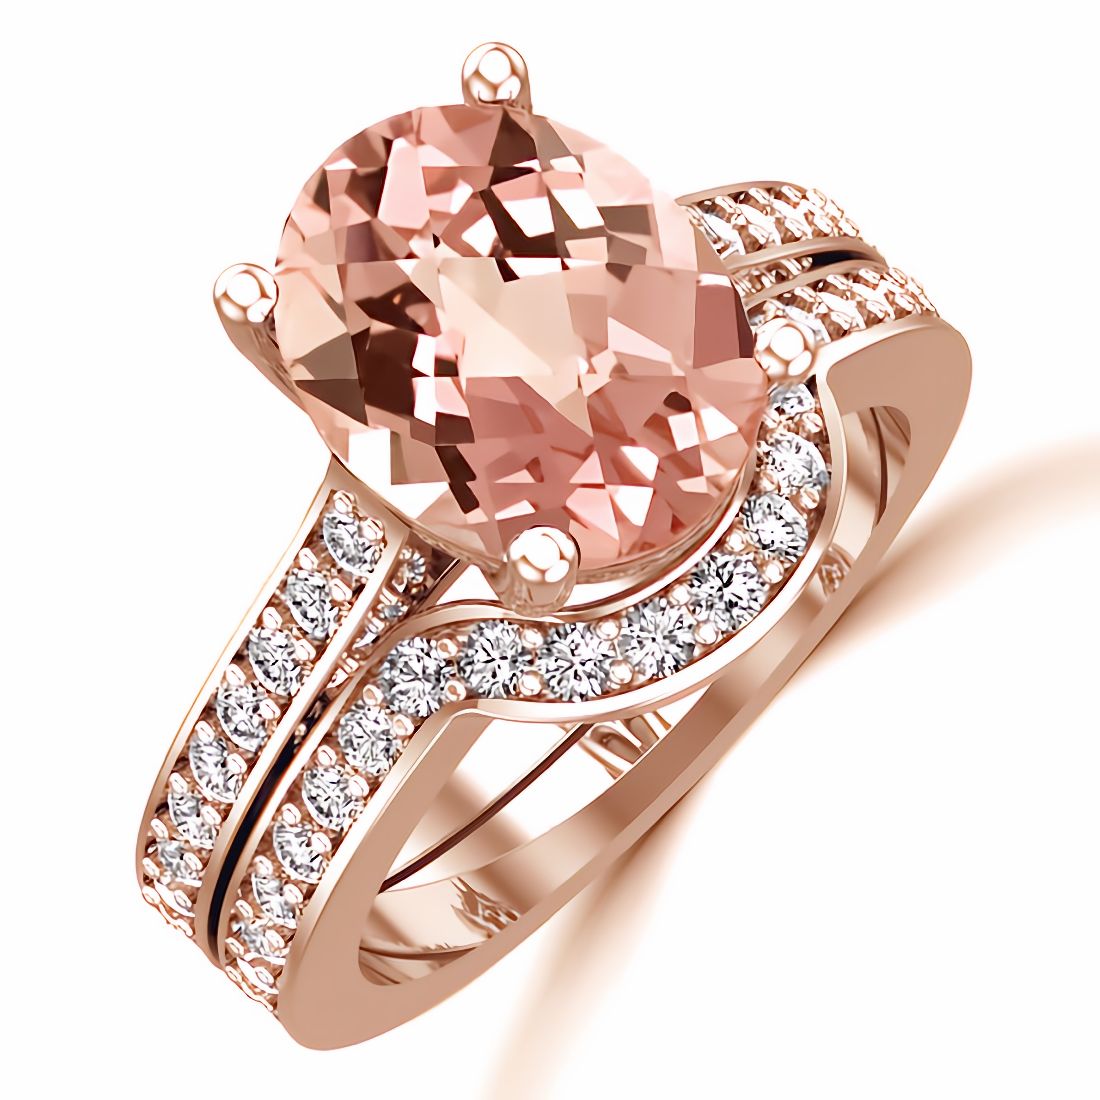 3 carats Pear Pink Morganite, Twist Shank Band Engagement Ring - 